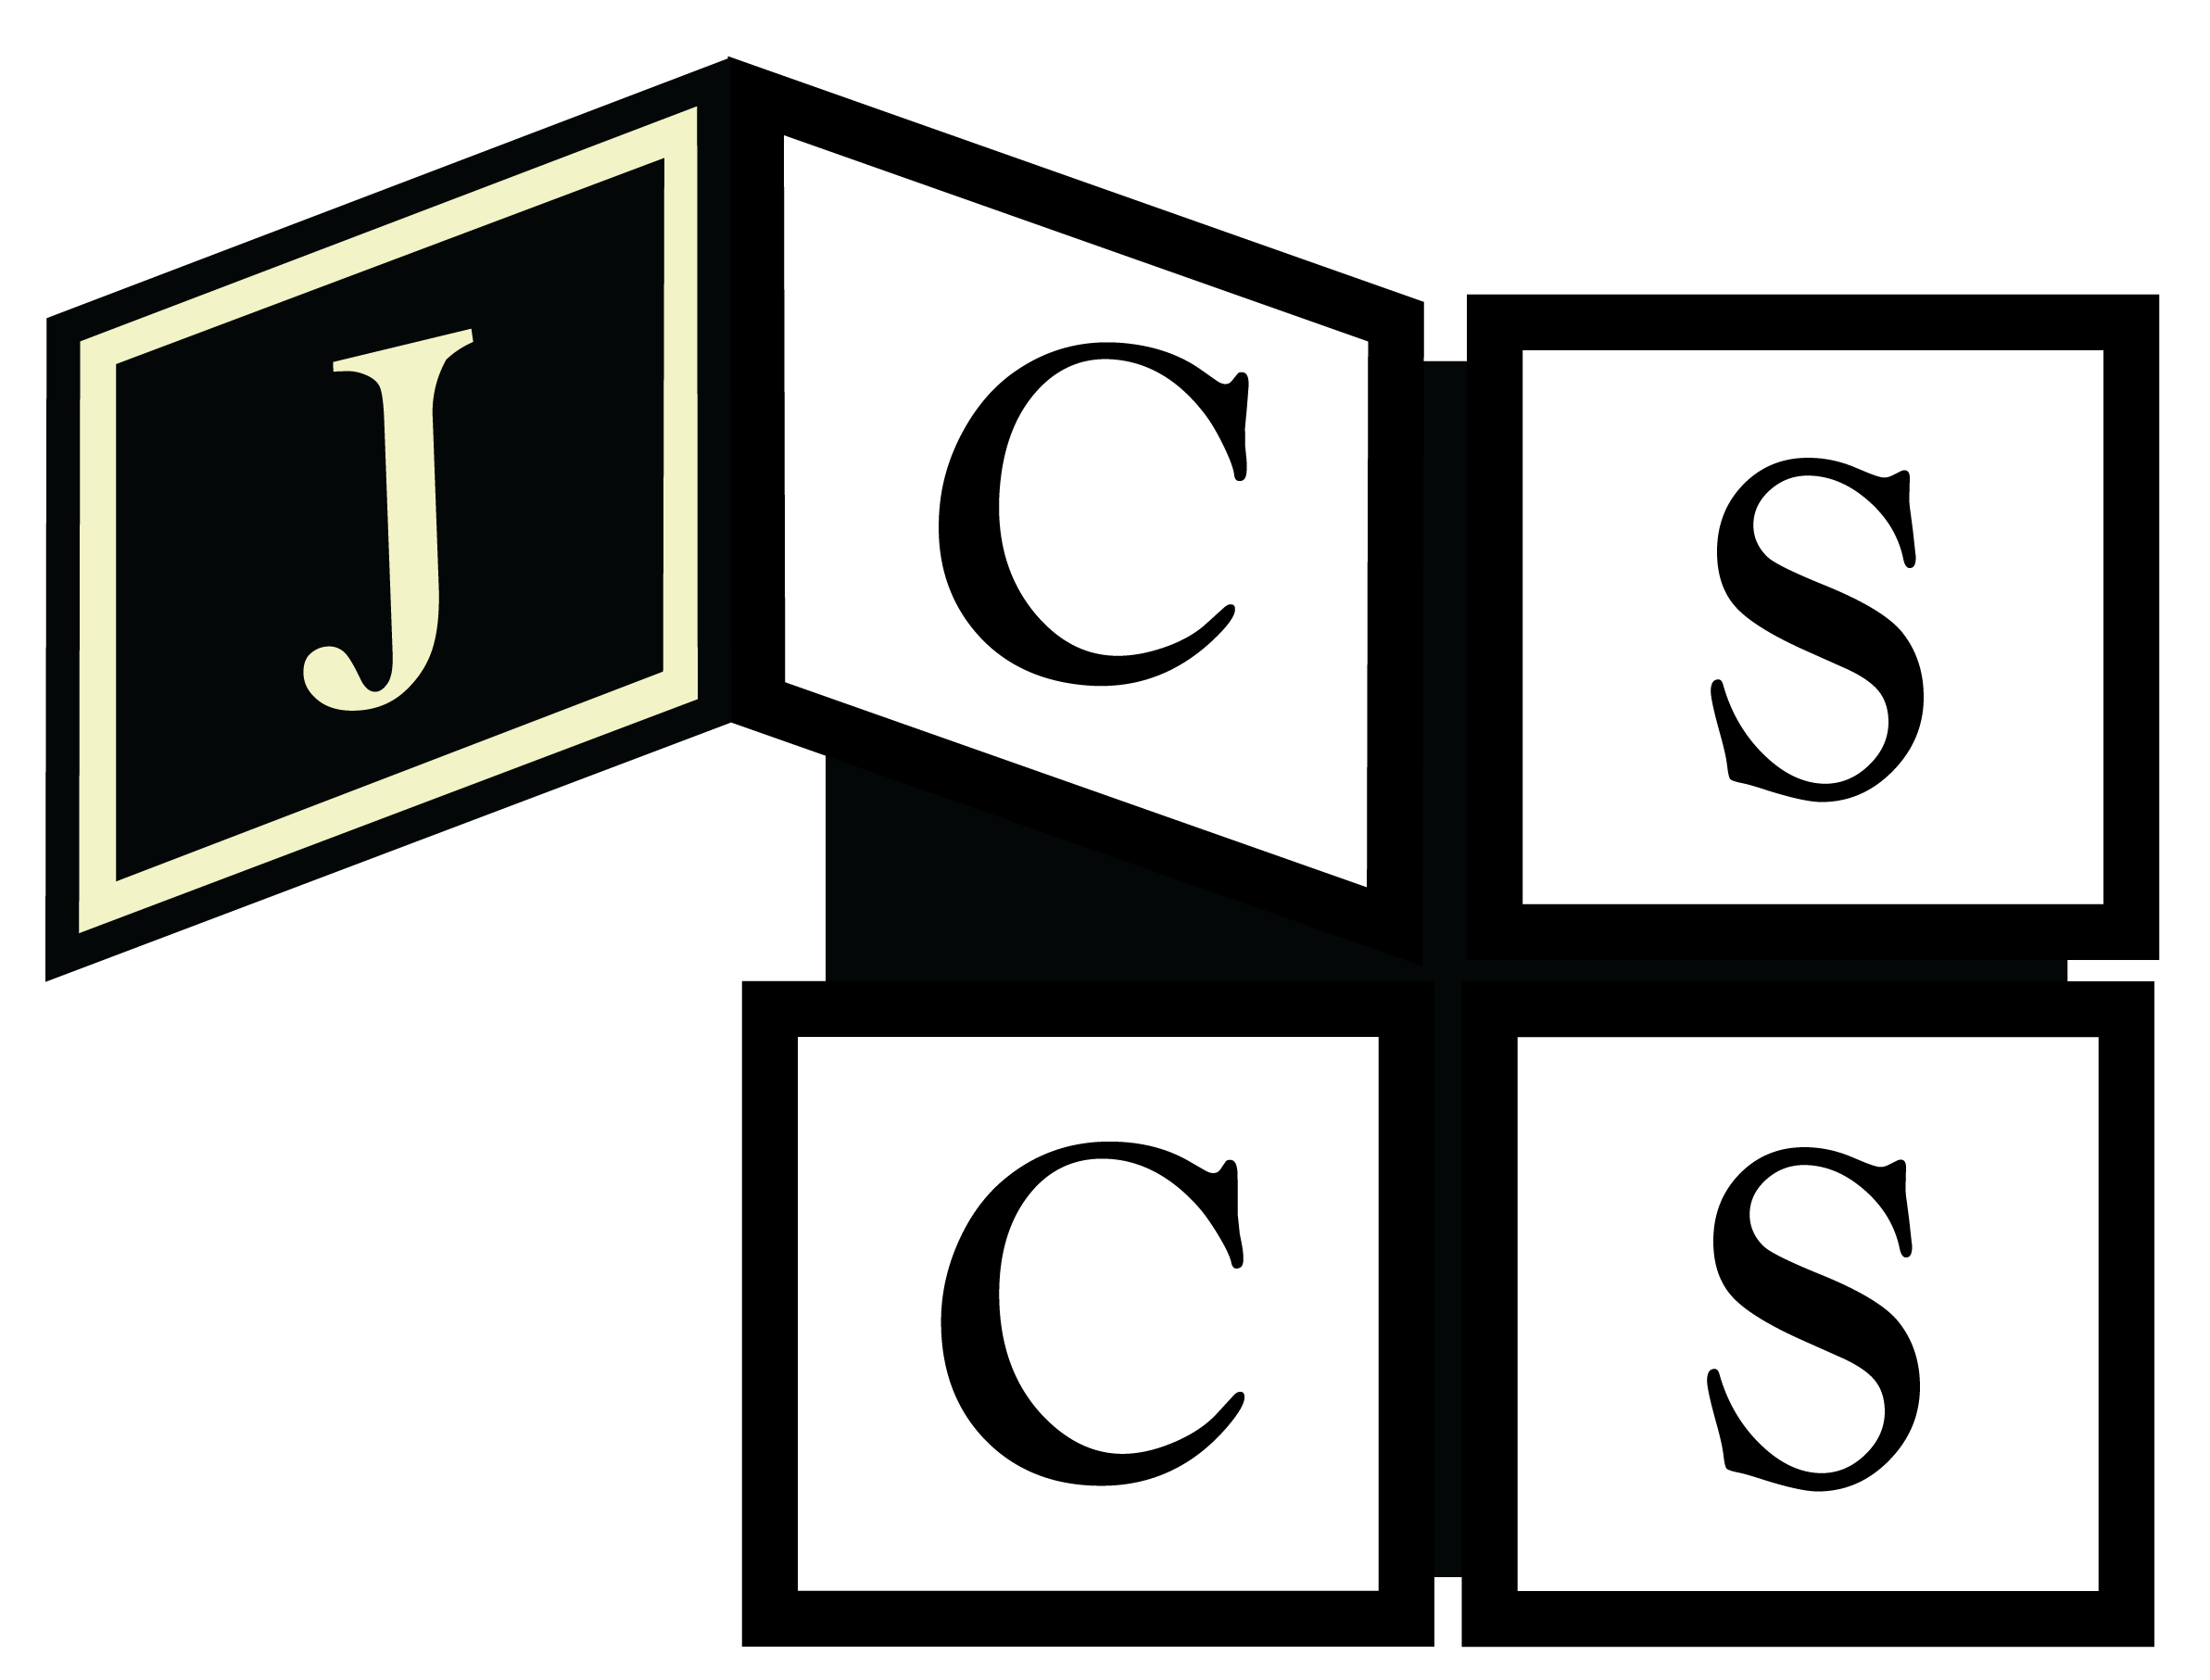 logo JCSCS